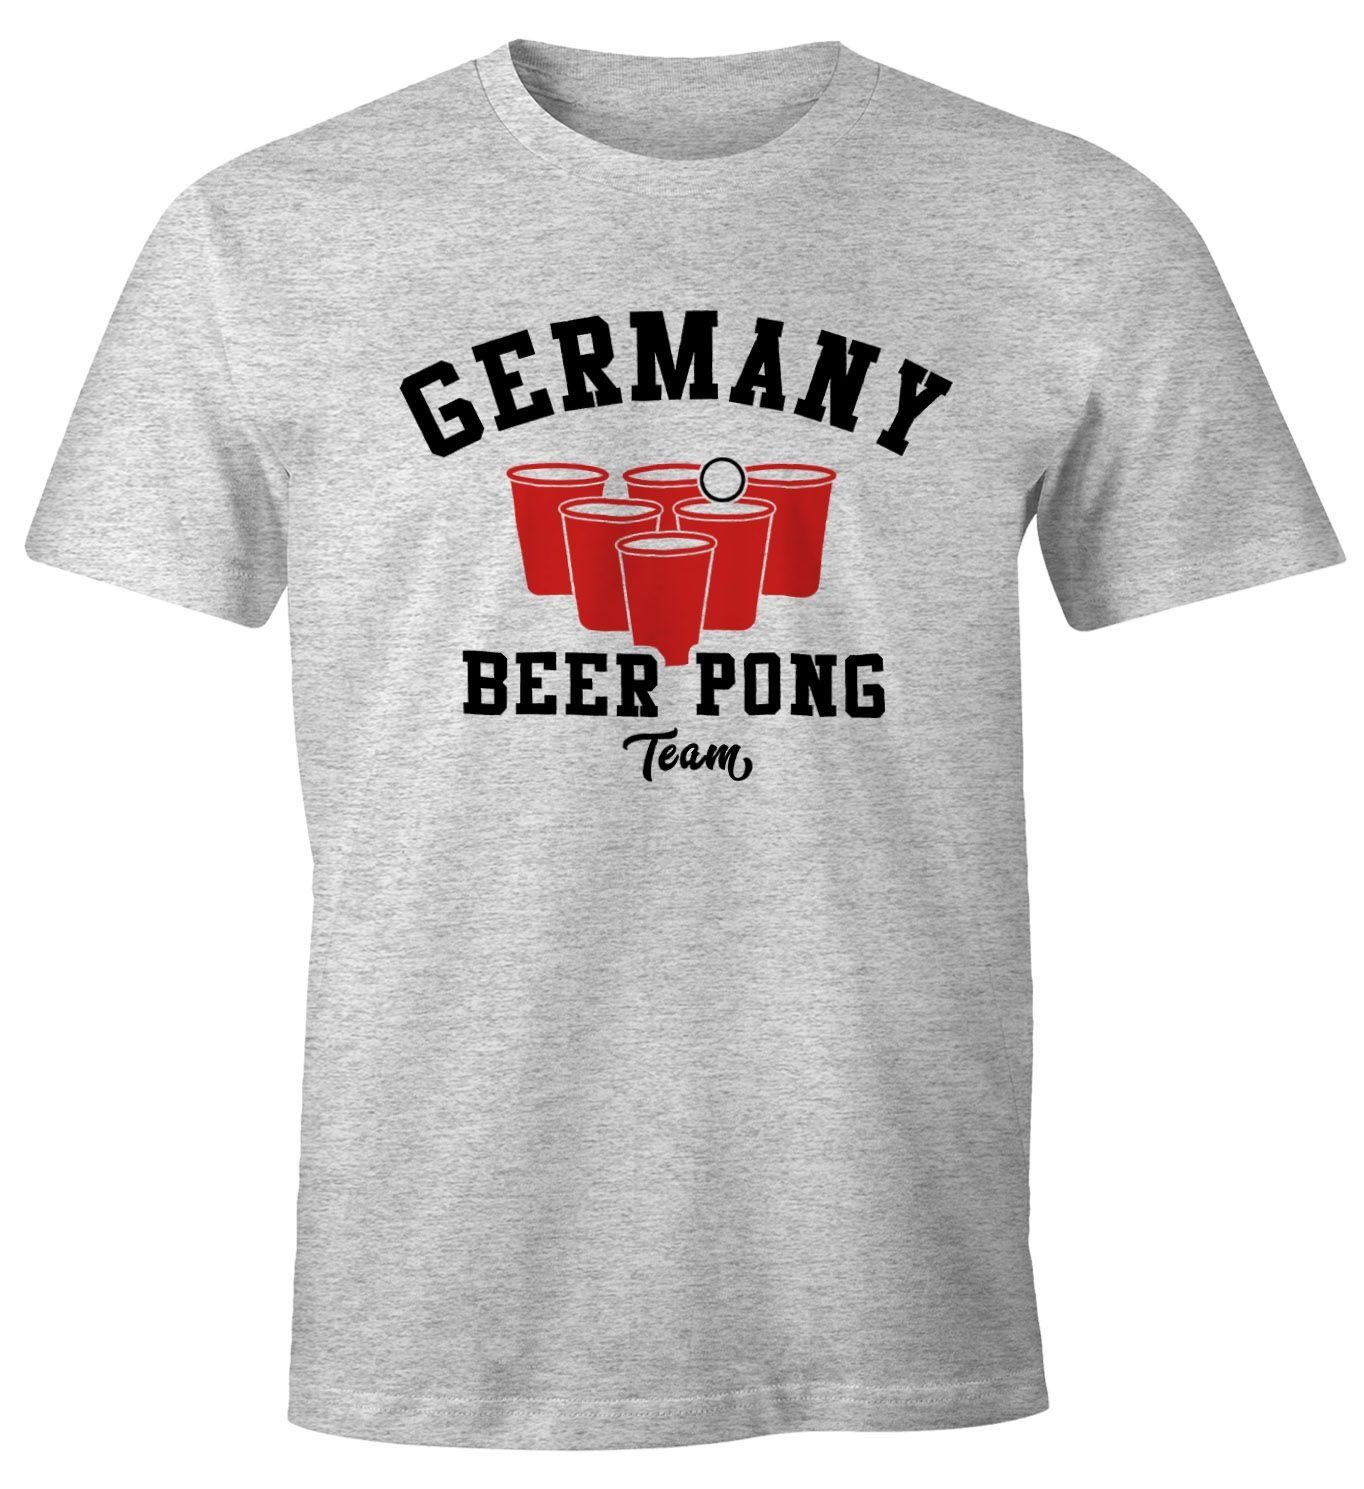 MoonWorks Print-Shirt Herren Fun-Shirt T-Shirt Germany Beer Moonworks® Print grau Pong Team Bier mit